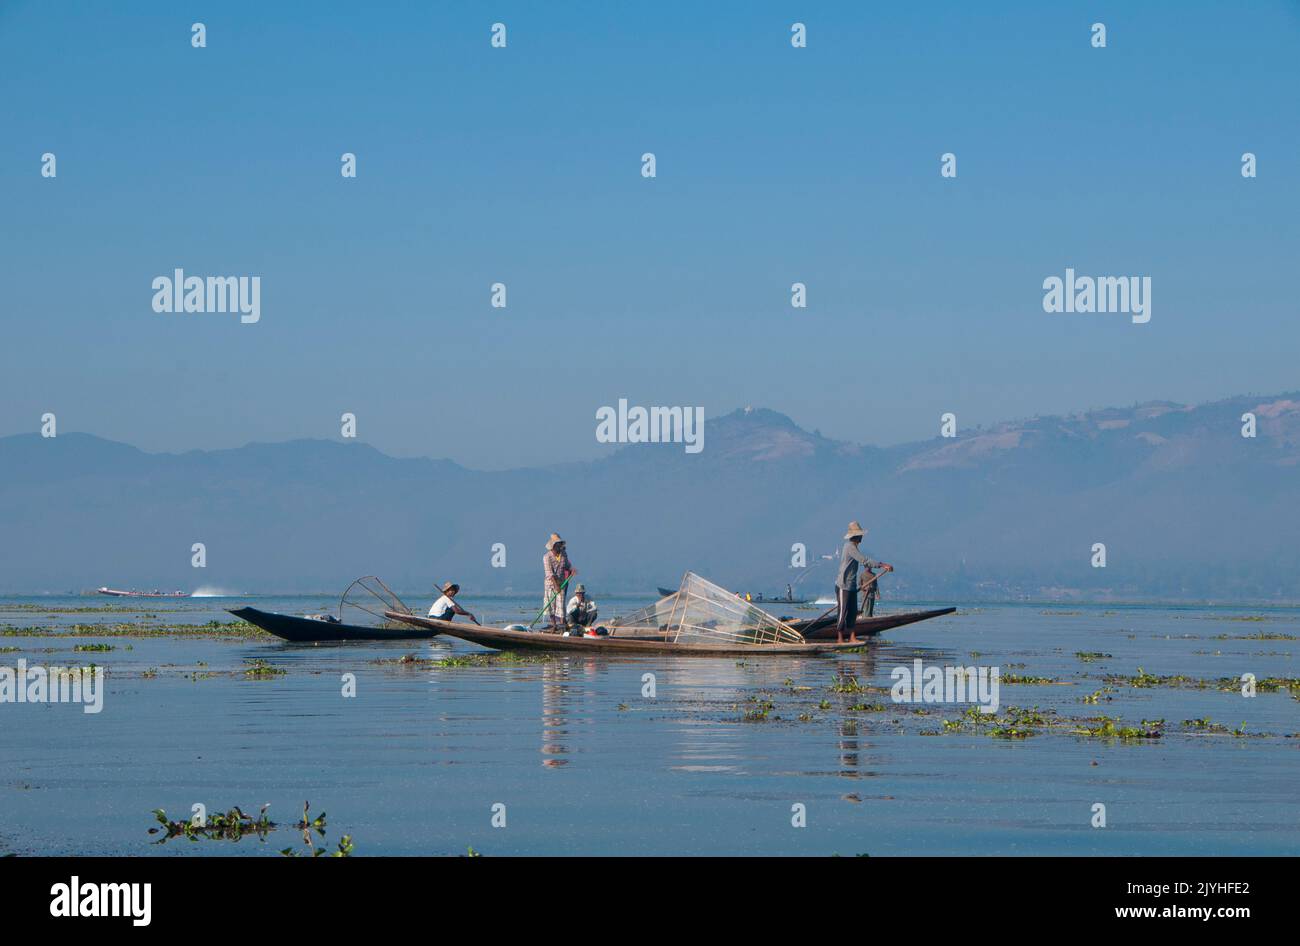 Burma / Myanmar: Intha-Fischer auf dem Inle Lake, Shan State. Inle Lake ist ein Süßwassersee im Bundesstaat Shan. Es ist der zweitgrößte See in Myanmar und einer der höchsten in einer Höhe von 2.900 Fuß (880 m). Die rund 70.000 Einwohner des Inle-Sees (Intha genannt) leben in vier am See angrenzenden Städten, in zahlreichen kleinen Dörfern am Seeufer und am See selbst. Die Bevölkerung besteht überwiegend aus Intha, mit einer Mischung aus anderen Shan, Taungyo, Pa-O (Taungthu), Danu, Kayah, Danaw- und Bamar-Ethnien. Stockfoto